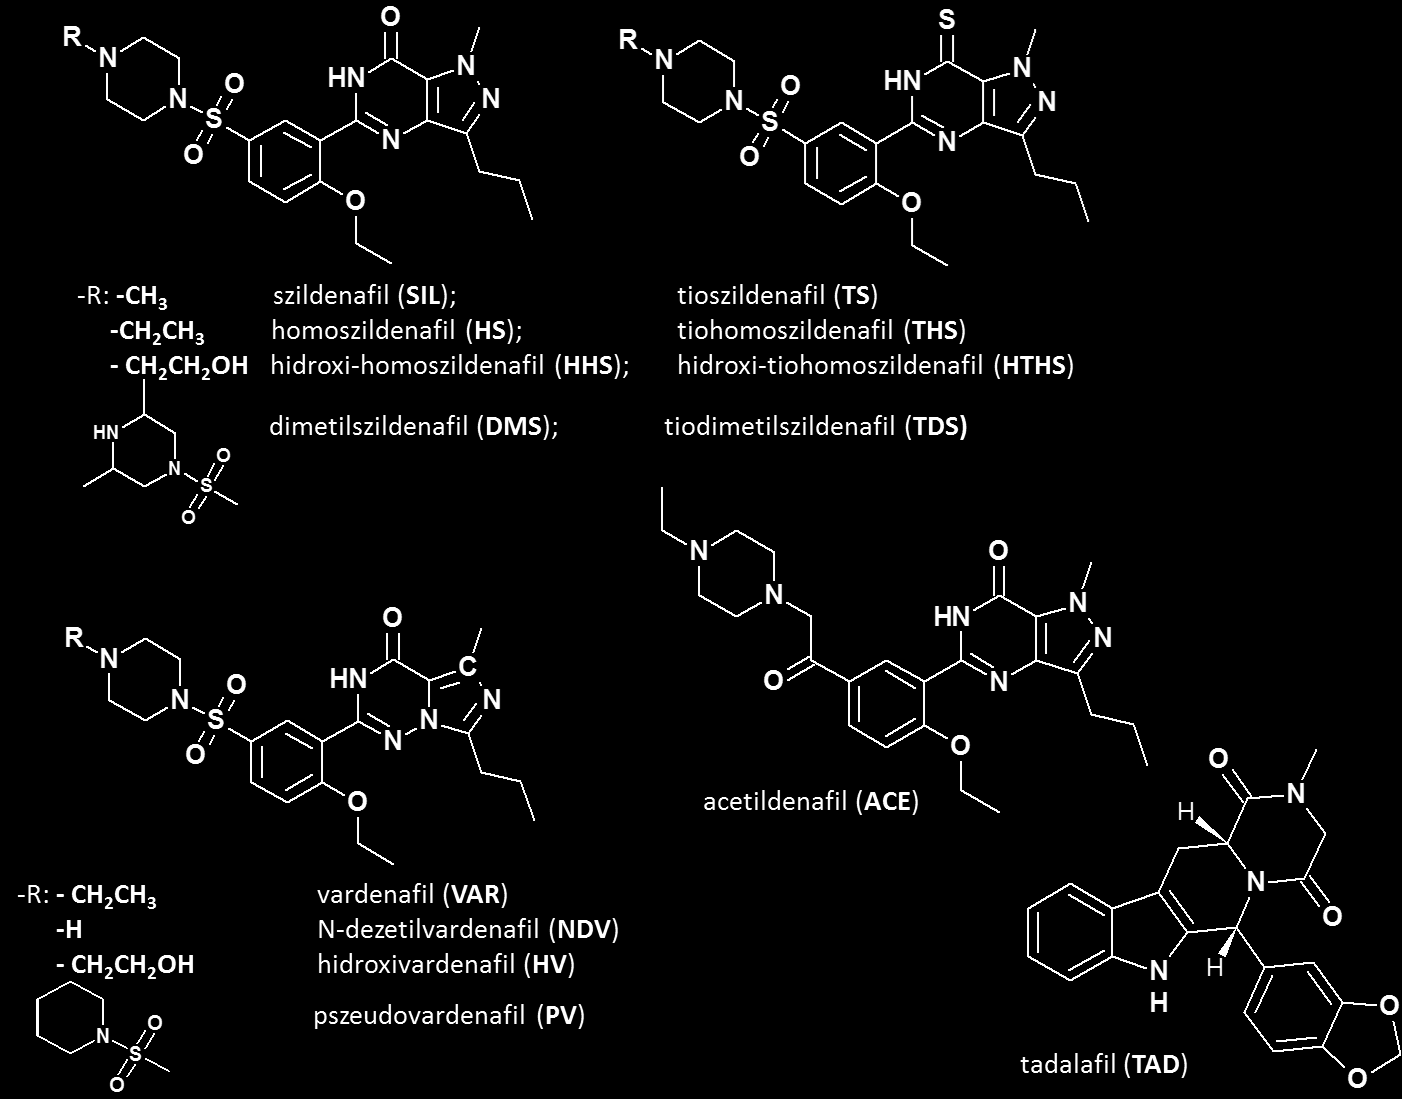 1. ábra: Az általunk vizsgált vegyületek szerkezete és elnevezése A vizsgált vegyületeket 5 csoportra oszthatjuk: a szildenafil alapvázas, a tioszildenafil alapvázas, a vardenafil alapvázas